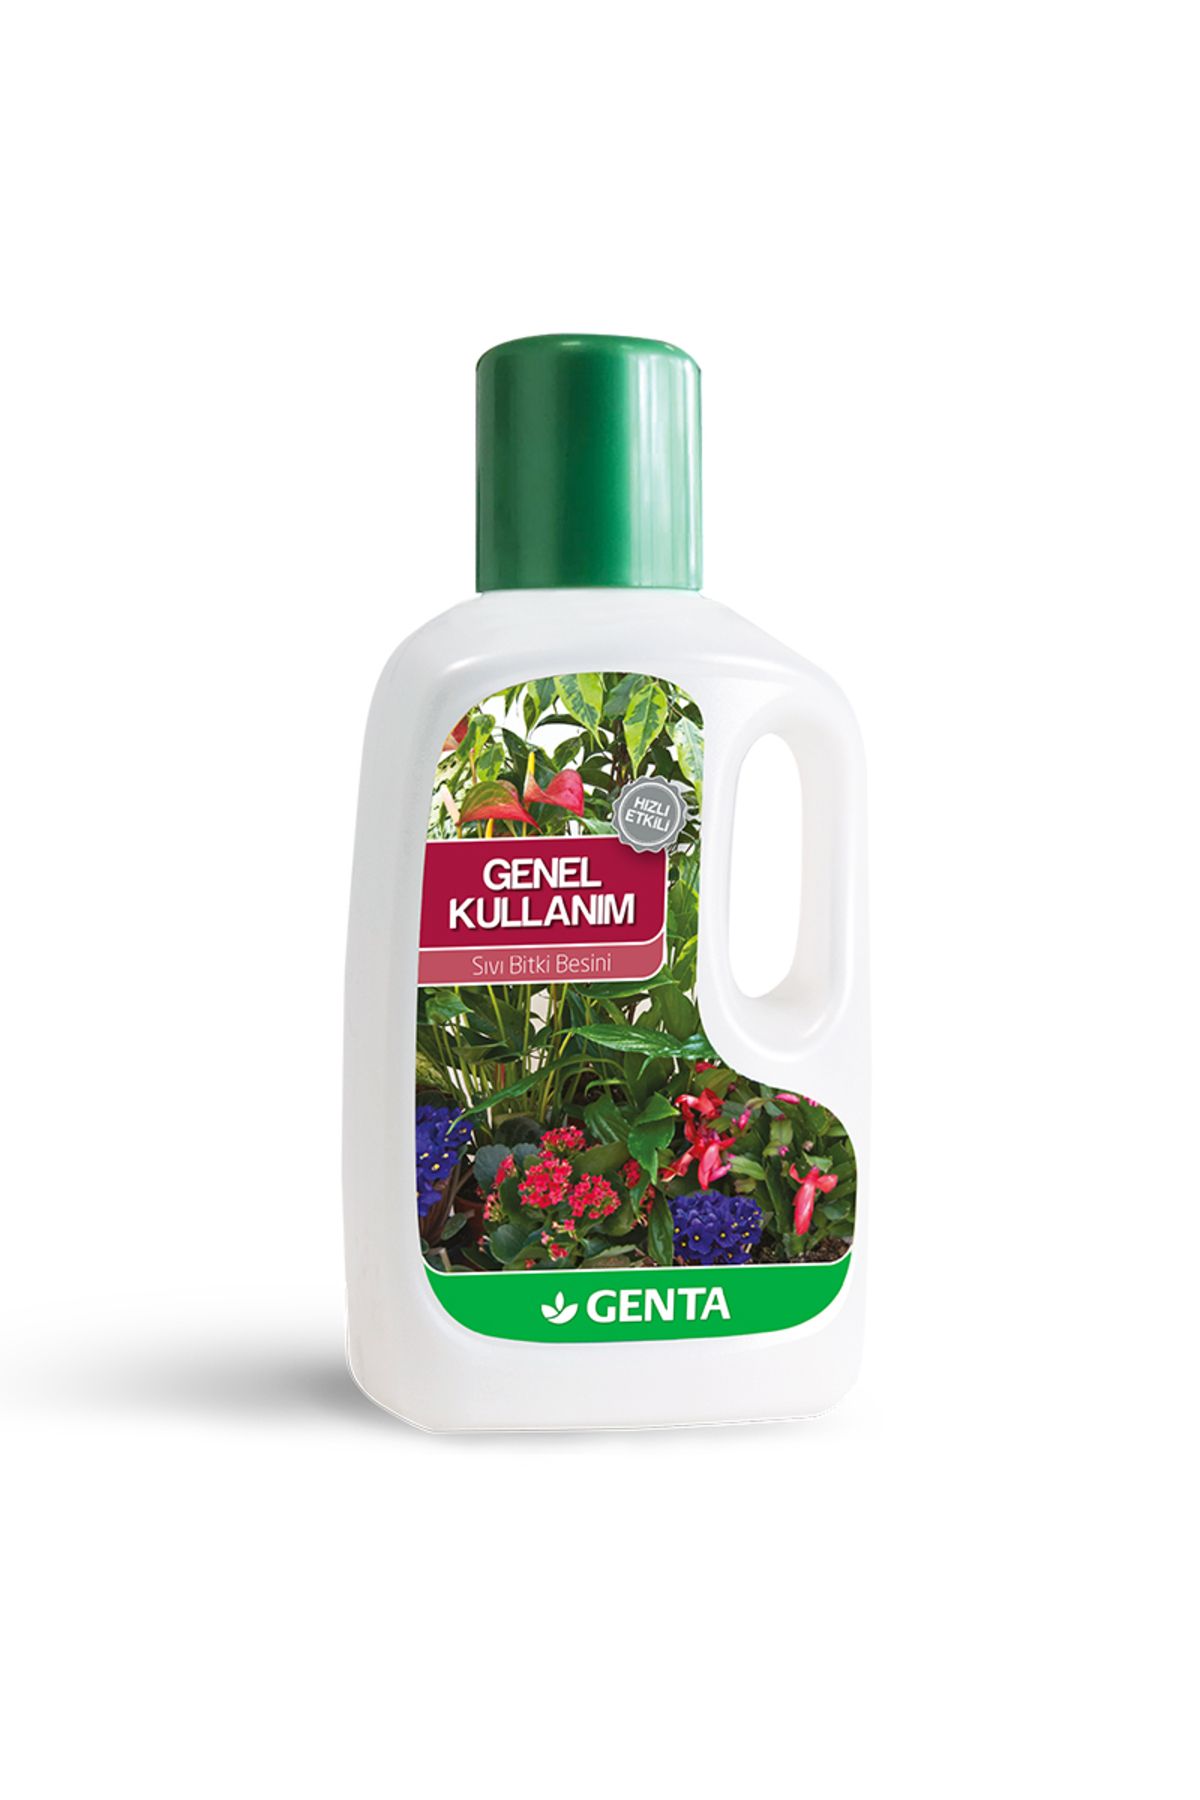 Genta Genel Kullanım Sıvı Bitki Besini 500 Ml